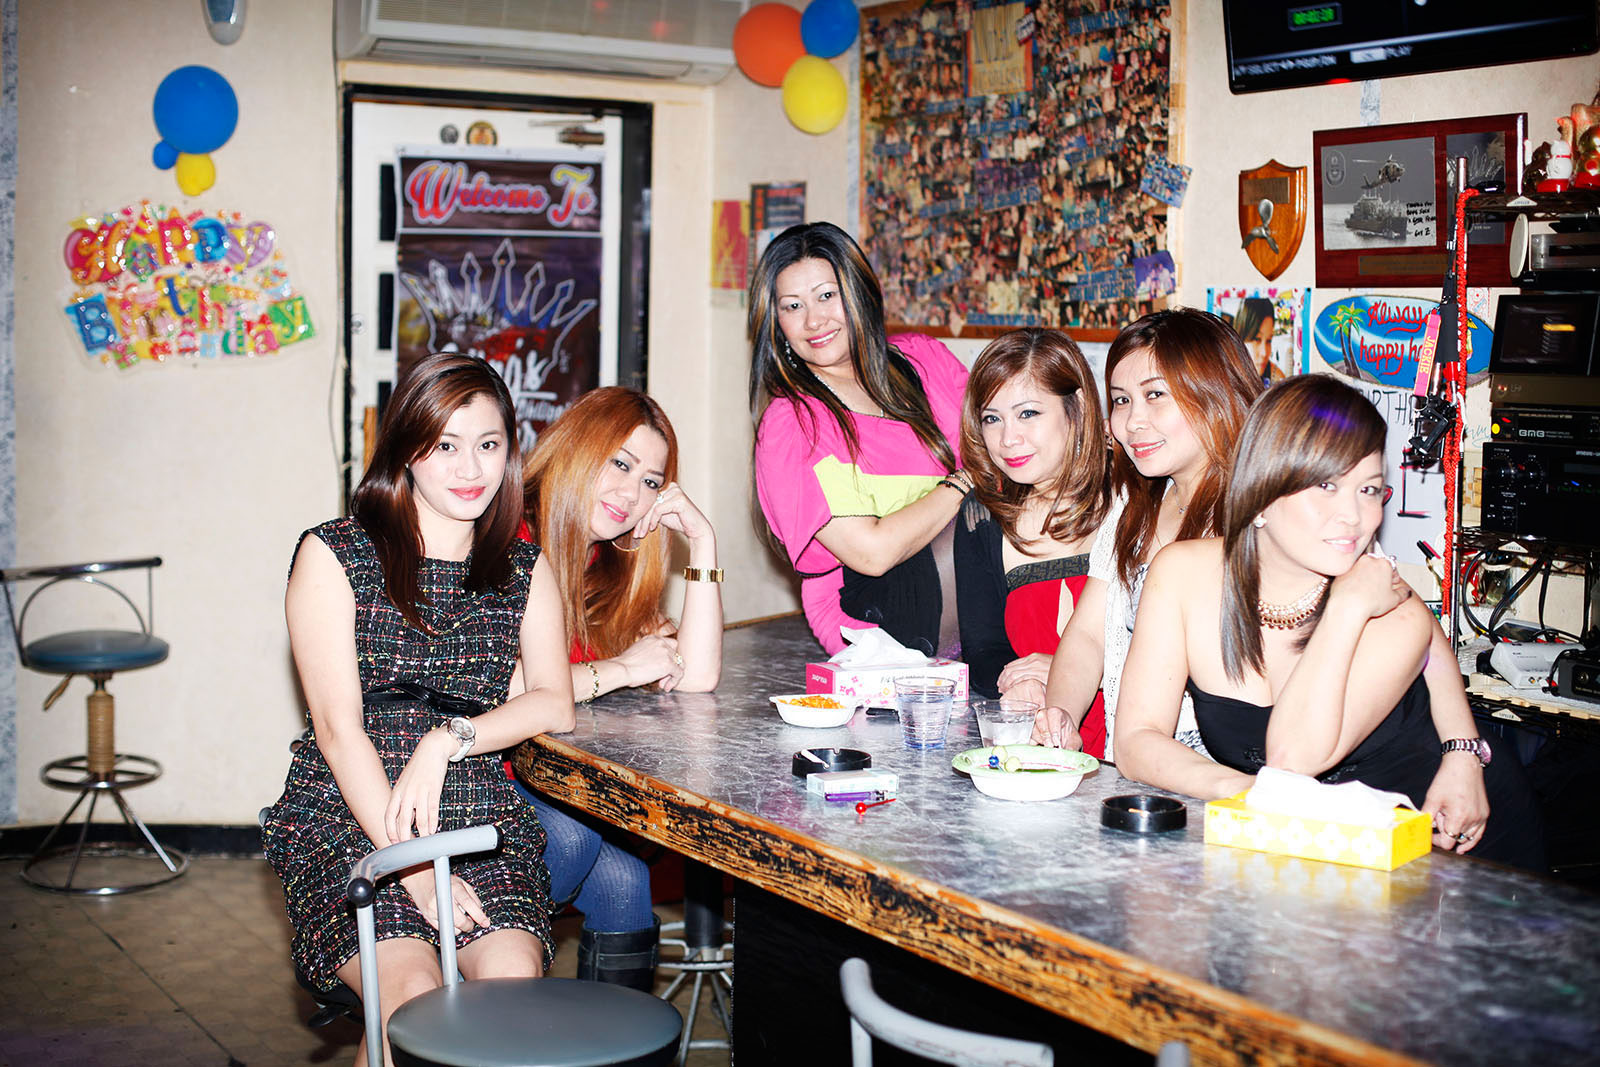   Filipino women in sailor town's bar Sasebo, Japan 2015        